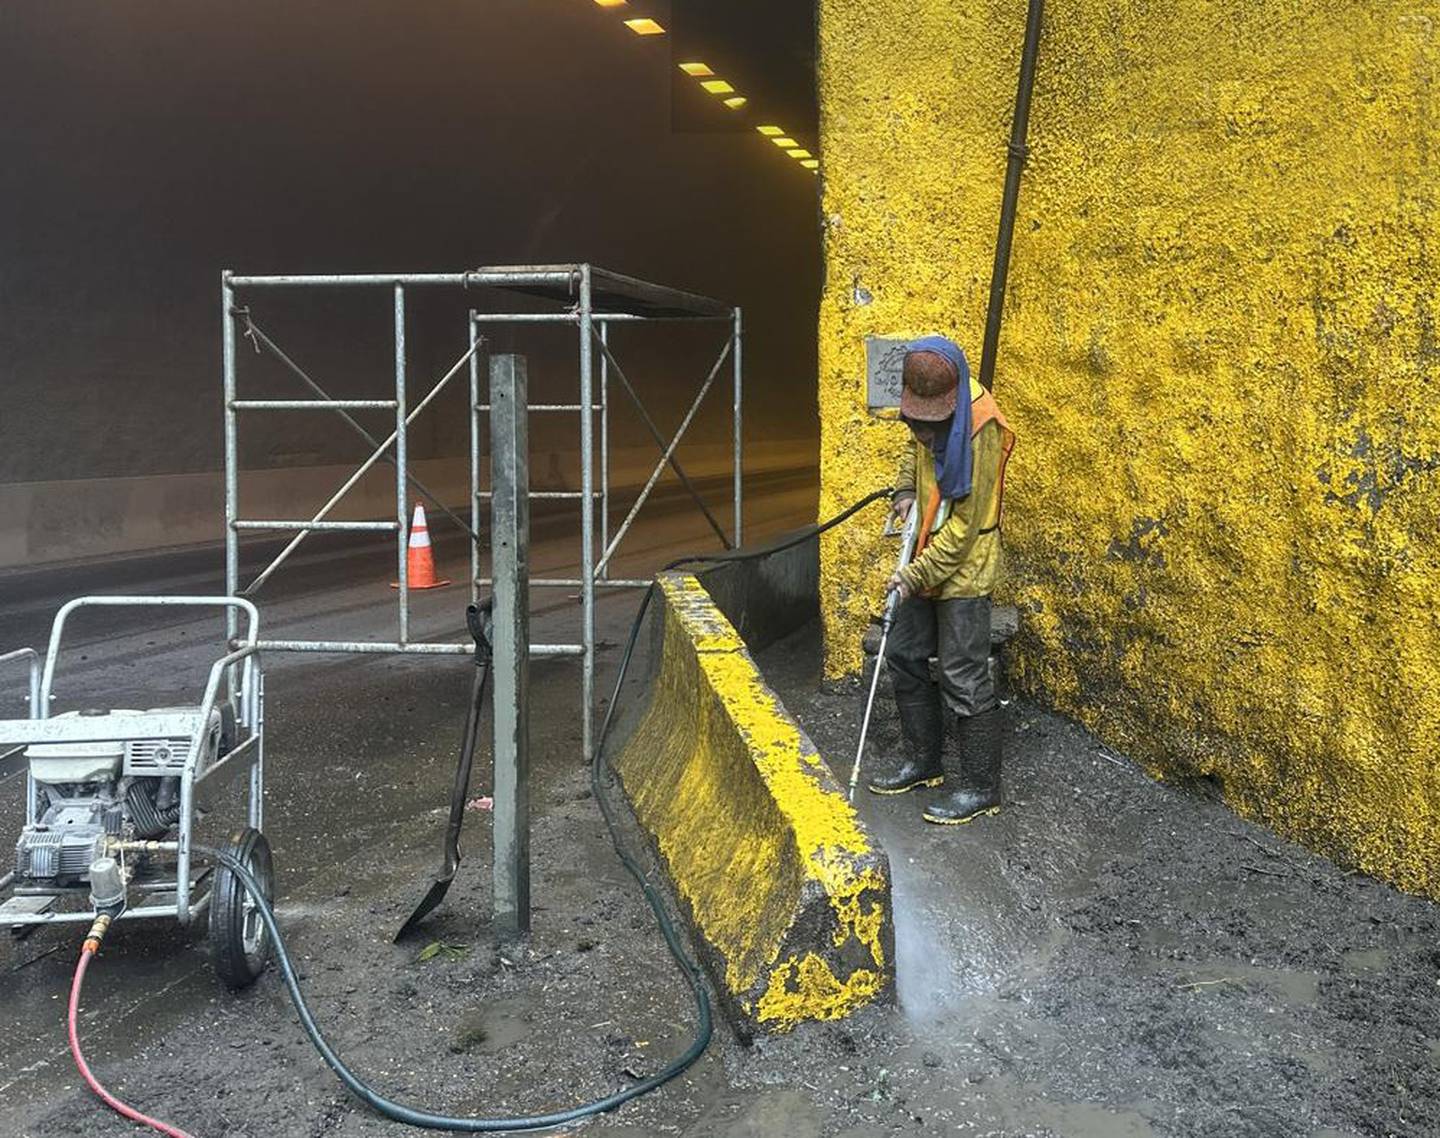 Conavi informó de que realiza trabajos de limpieza de
barandas, paredes y del sistema de drenaje en el túnel Zurquí. Foto: Cortesía Conavi